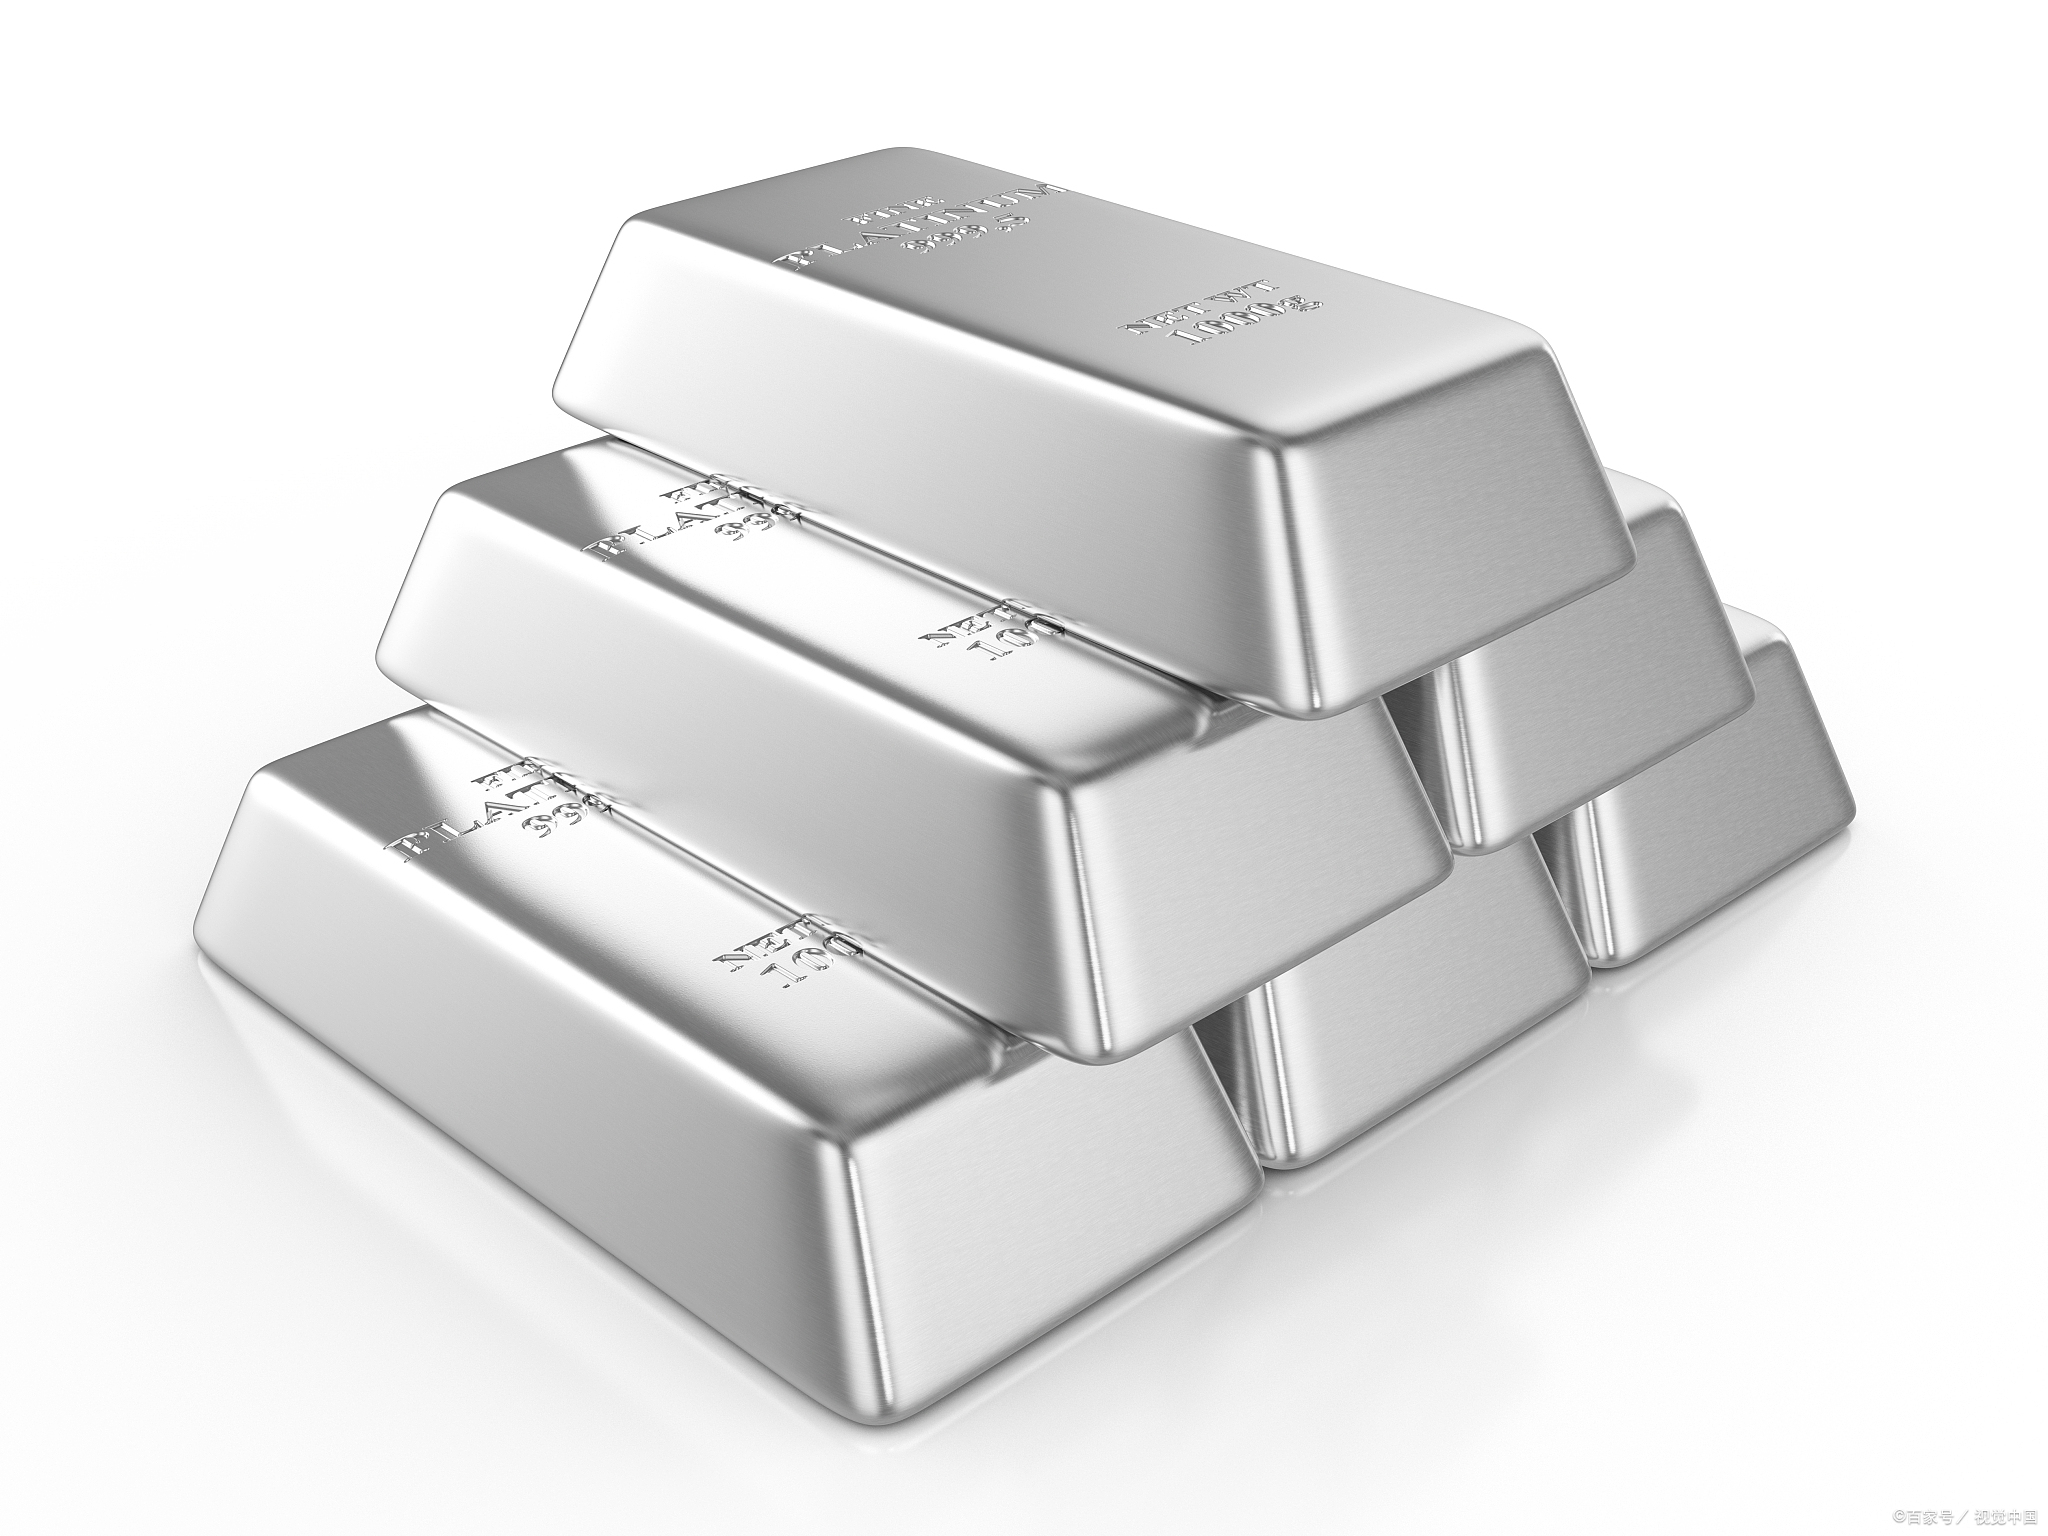 铂族金属回收商介绍铂族贵金属的用途